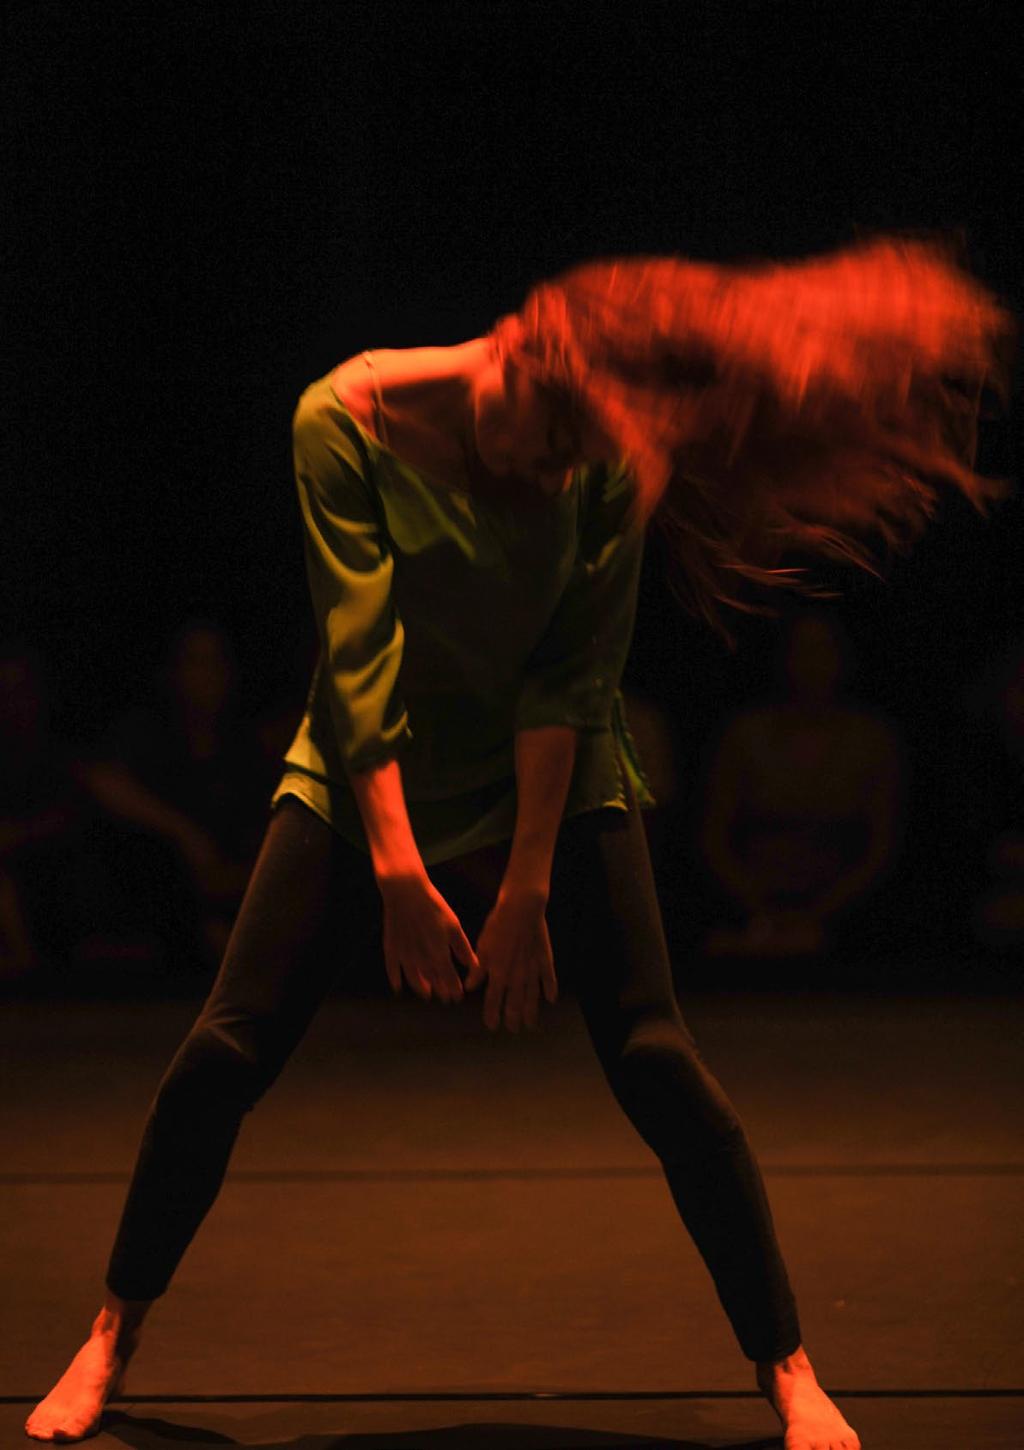 Sinopsis Regards (miradas), es un espectáculo de danza contemporánea y Break Dance, compuesto por un programa de cuadro coreografías, que profundizan en las relaciones humanas, siempre desde la